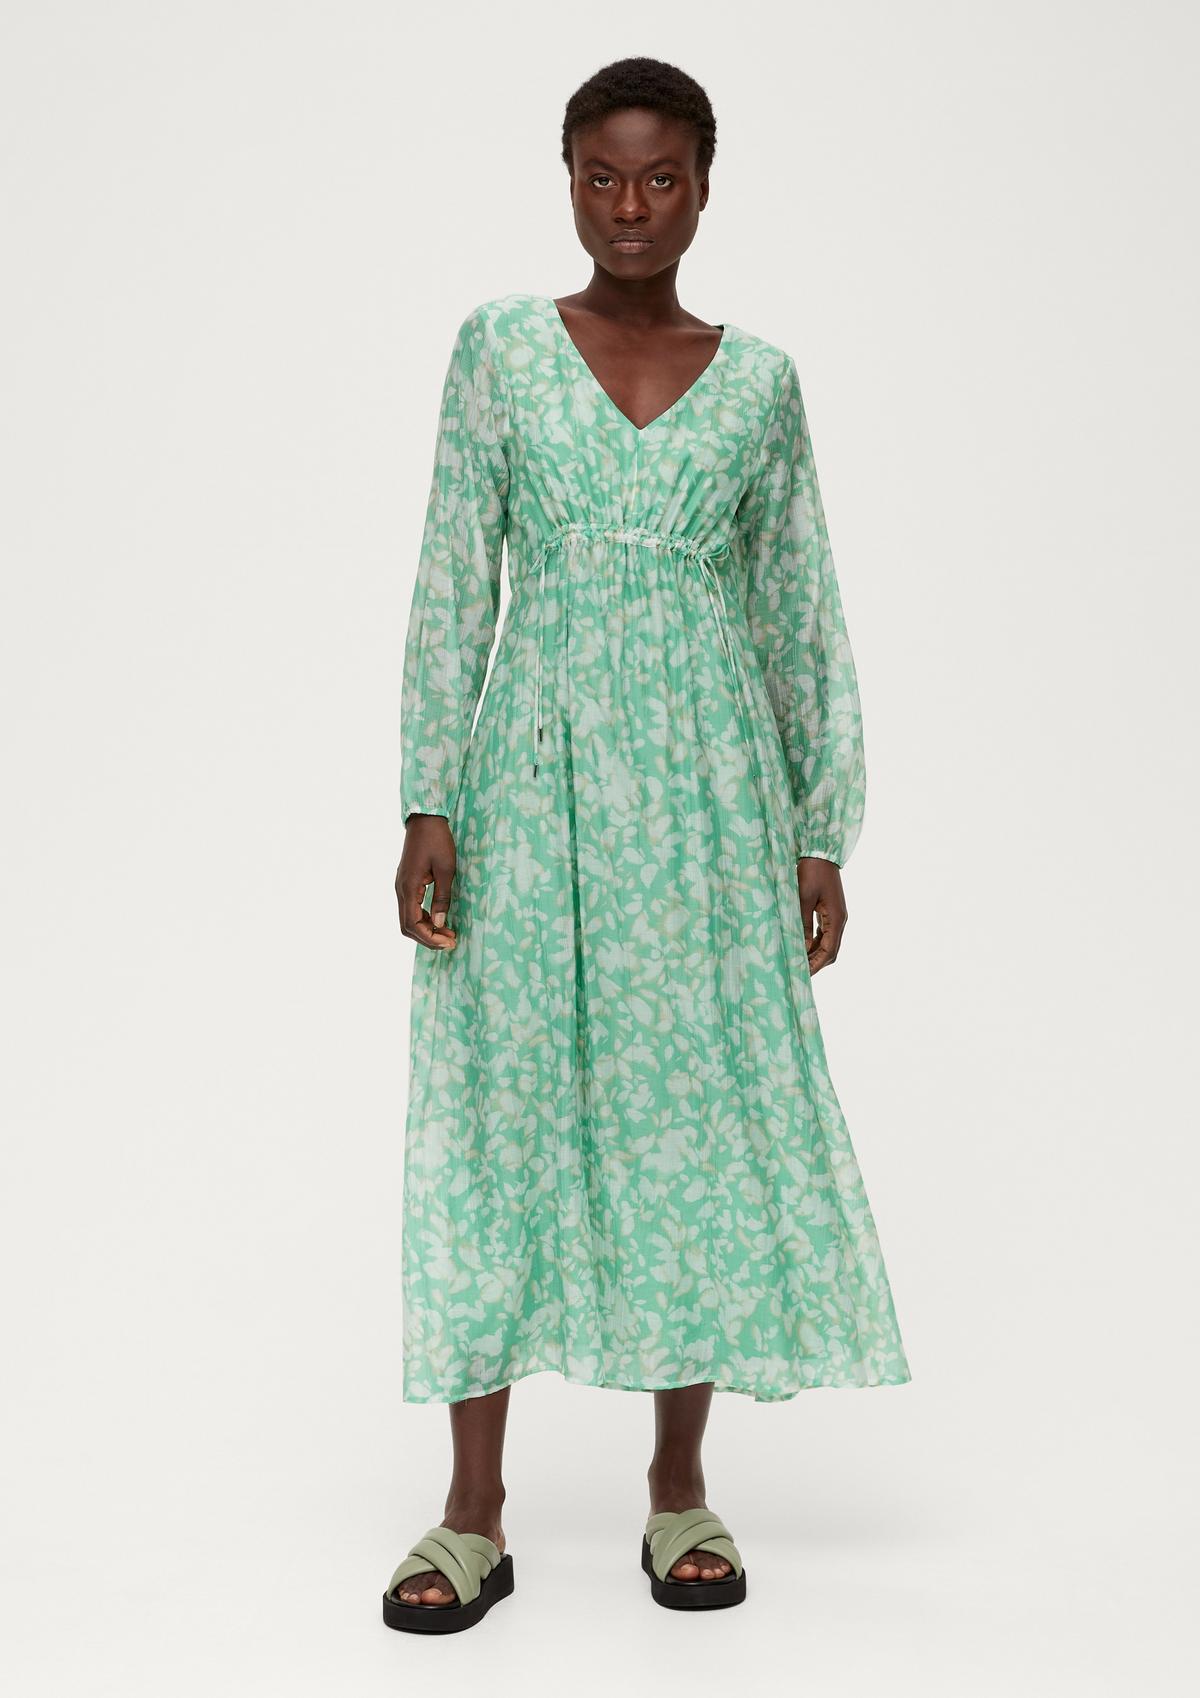 Shop maxi dresses for women now online